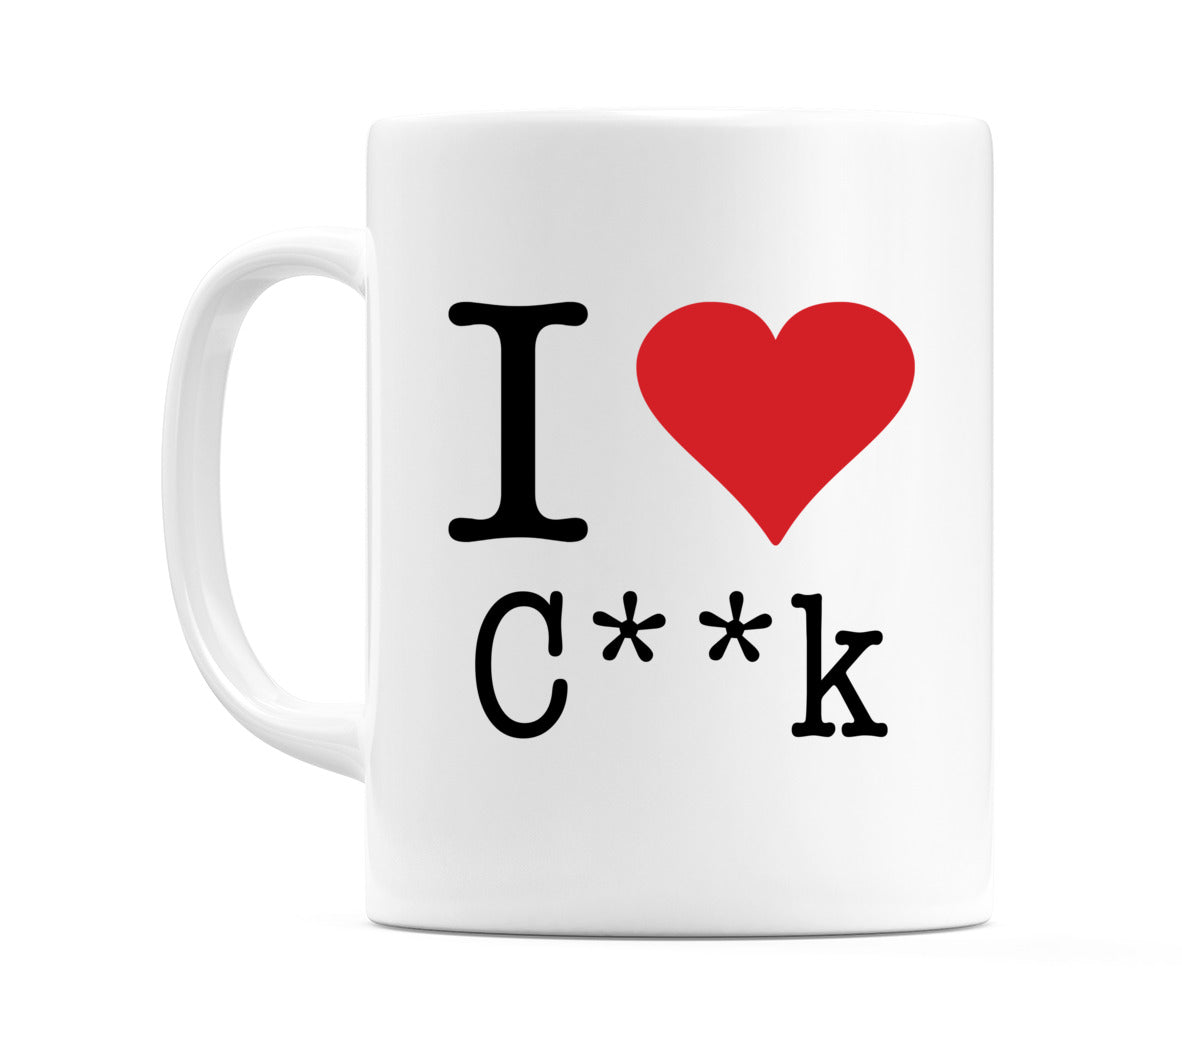 I Love C**k Mug